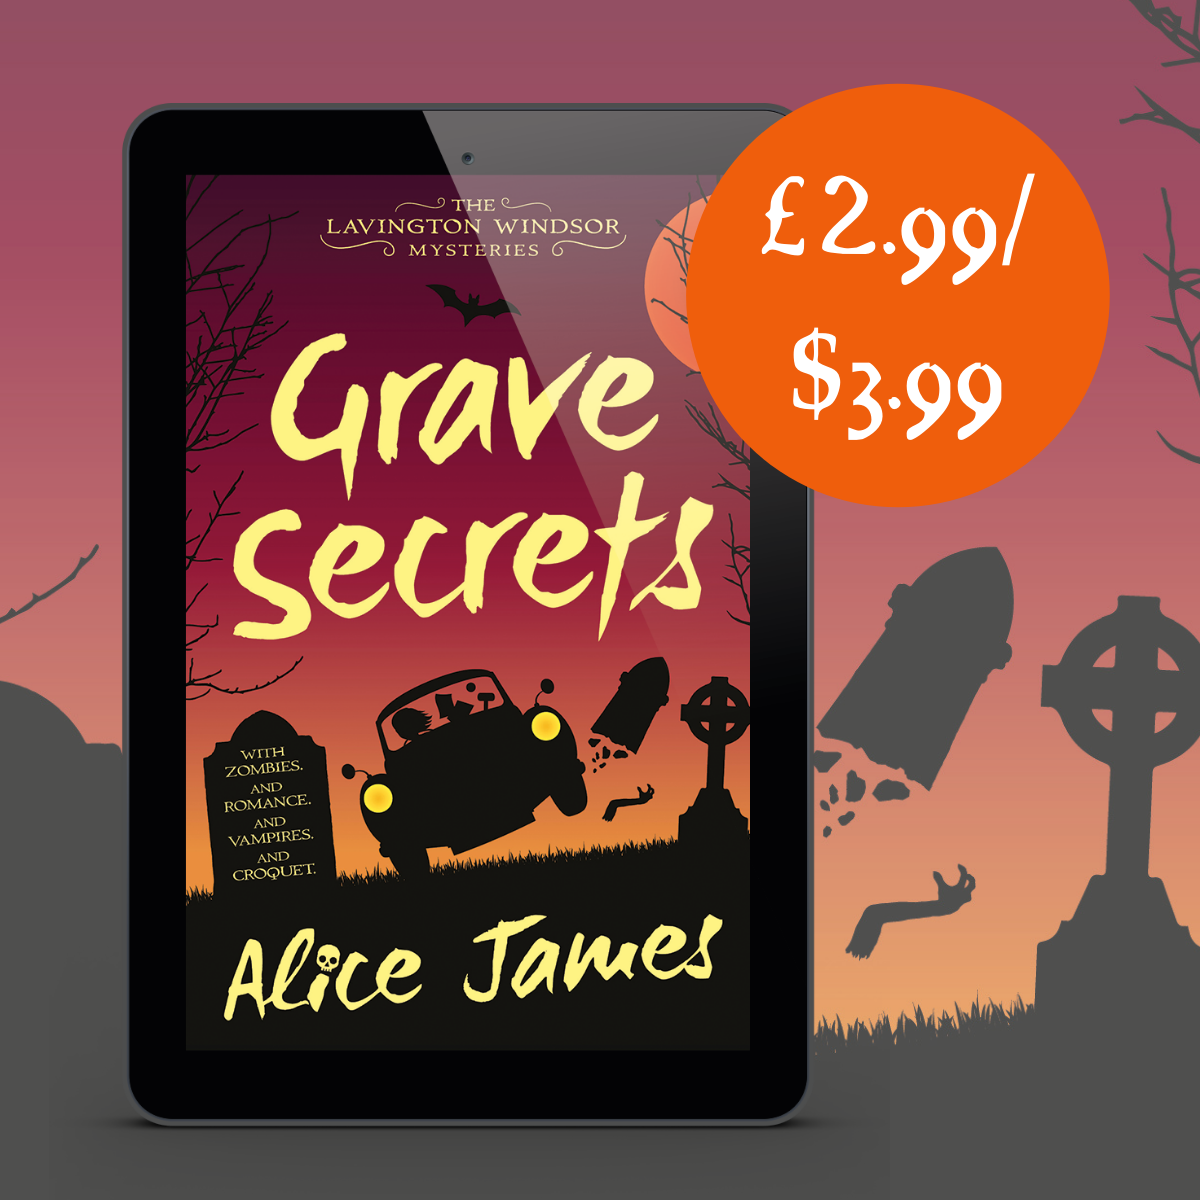 Grave Secrets sale